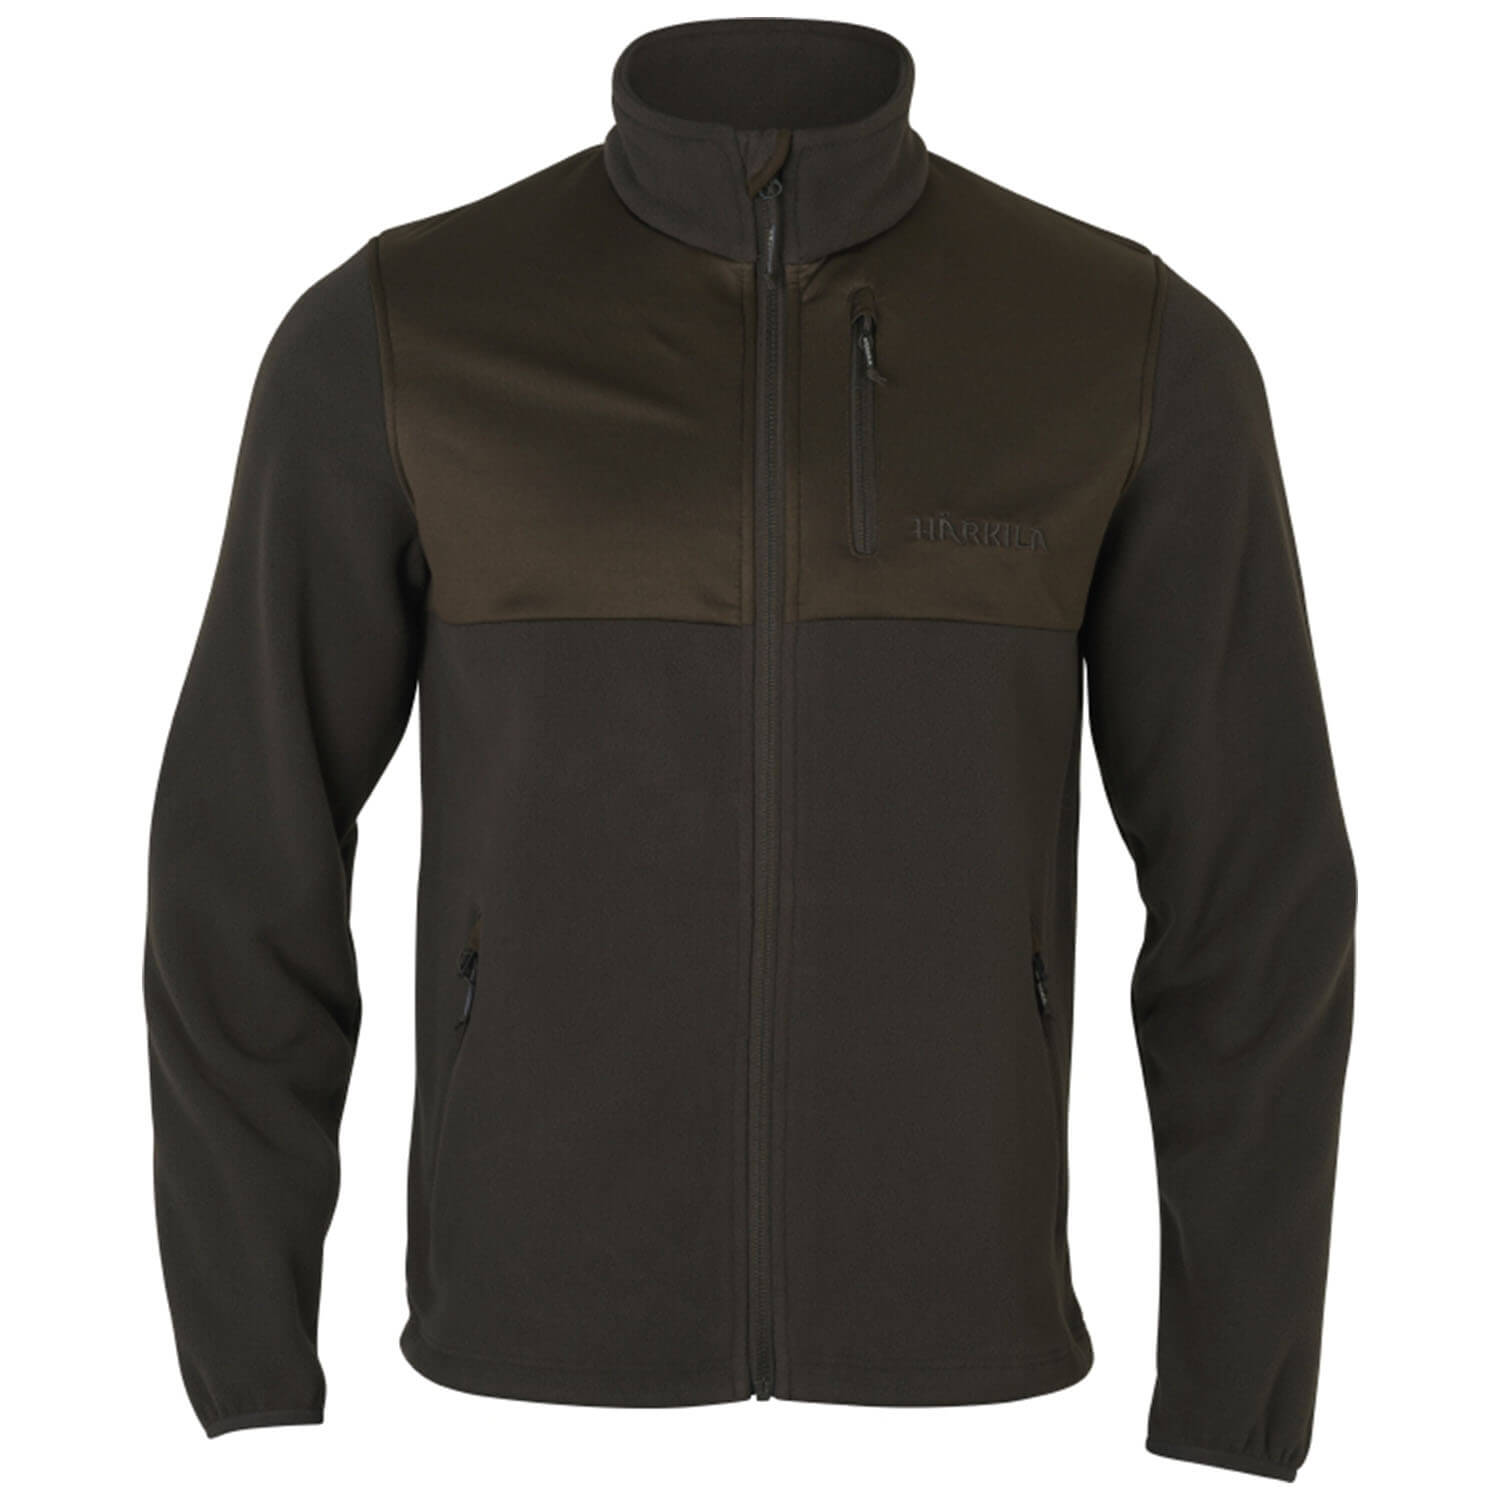 Härkila fleece jacket Steinn (shadow brown) - Hunting Jackets